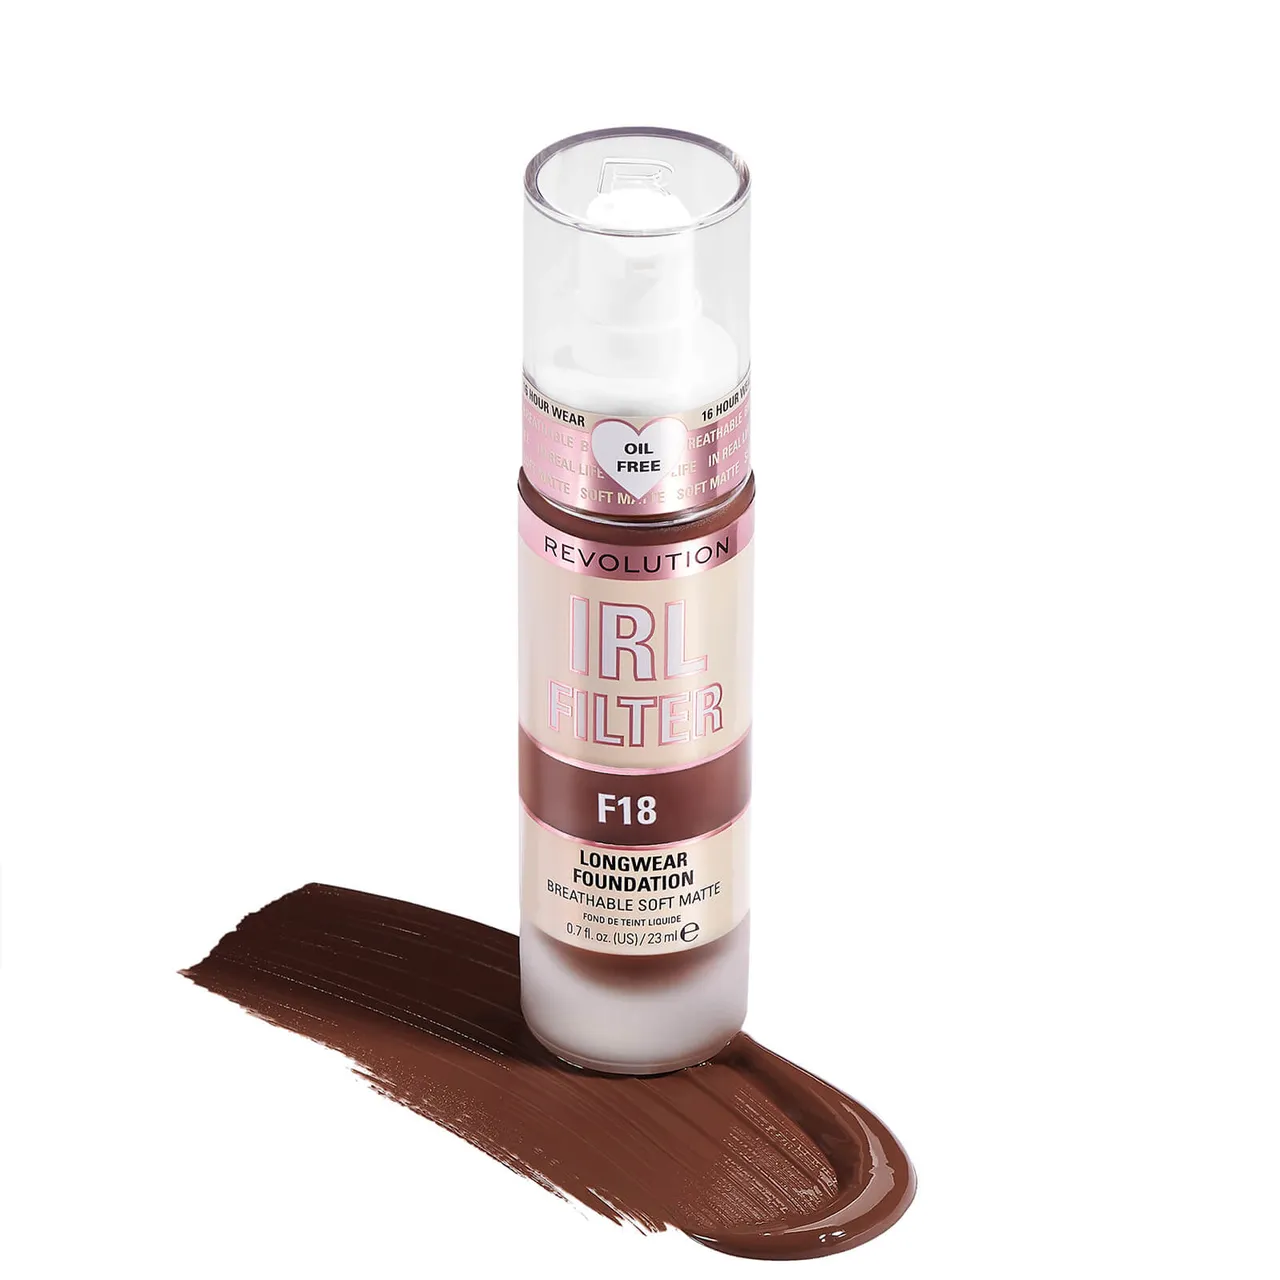 Makeup Revolution IRL Filter Longwear Foundation 23ml (Various Shades) - F18